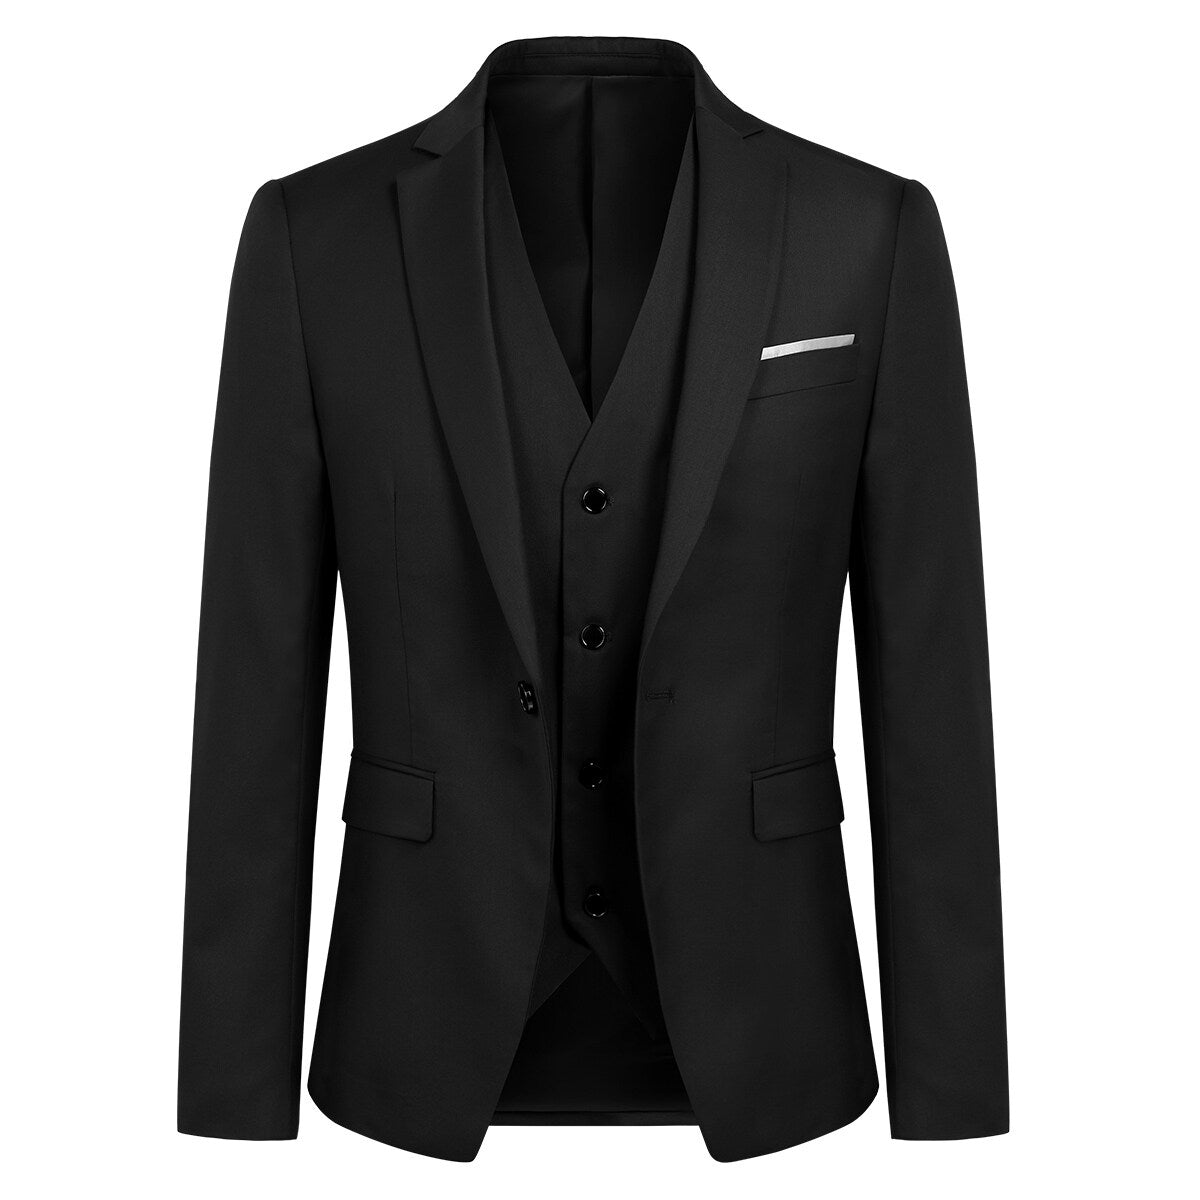 3-Piece Slim Fit One Button Fashion Black Suit